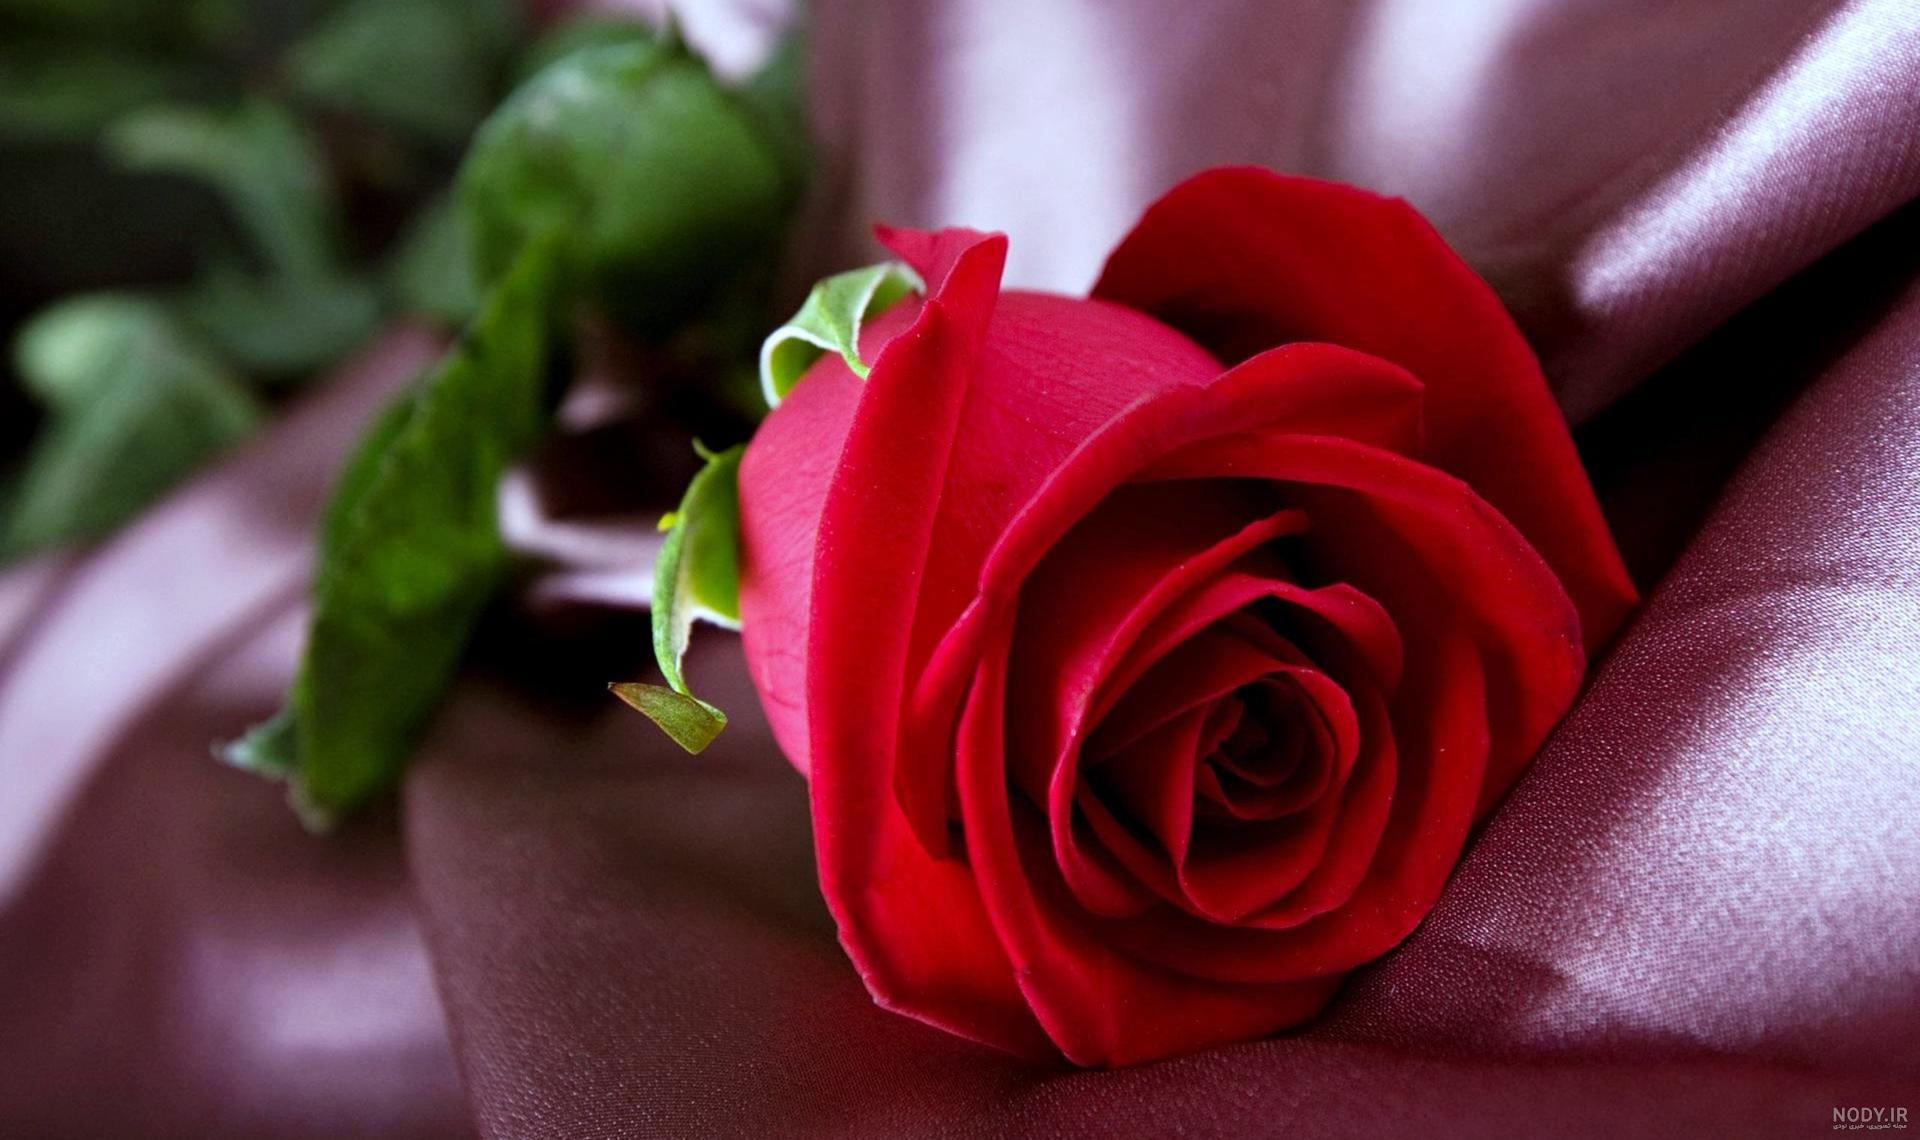 عکس گل رز قرمز با زمینه مشکی